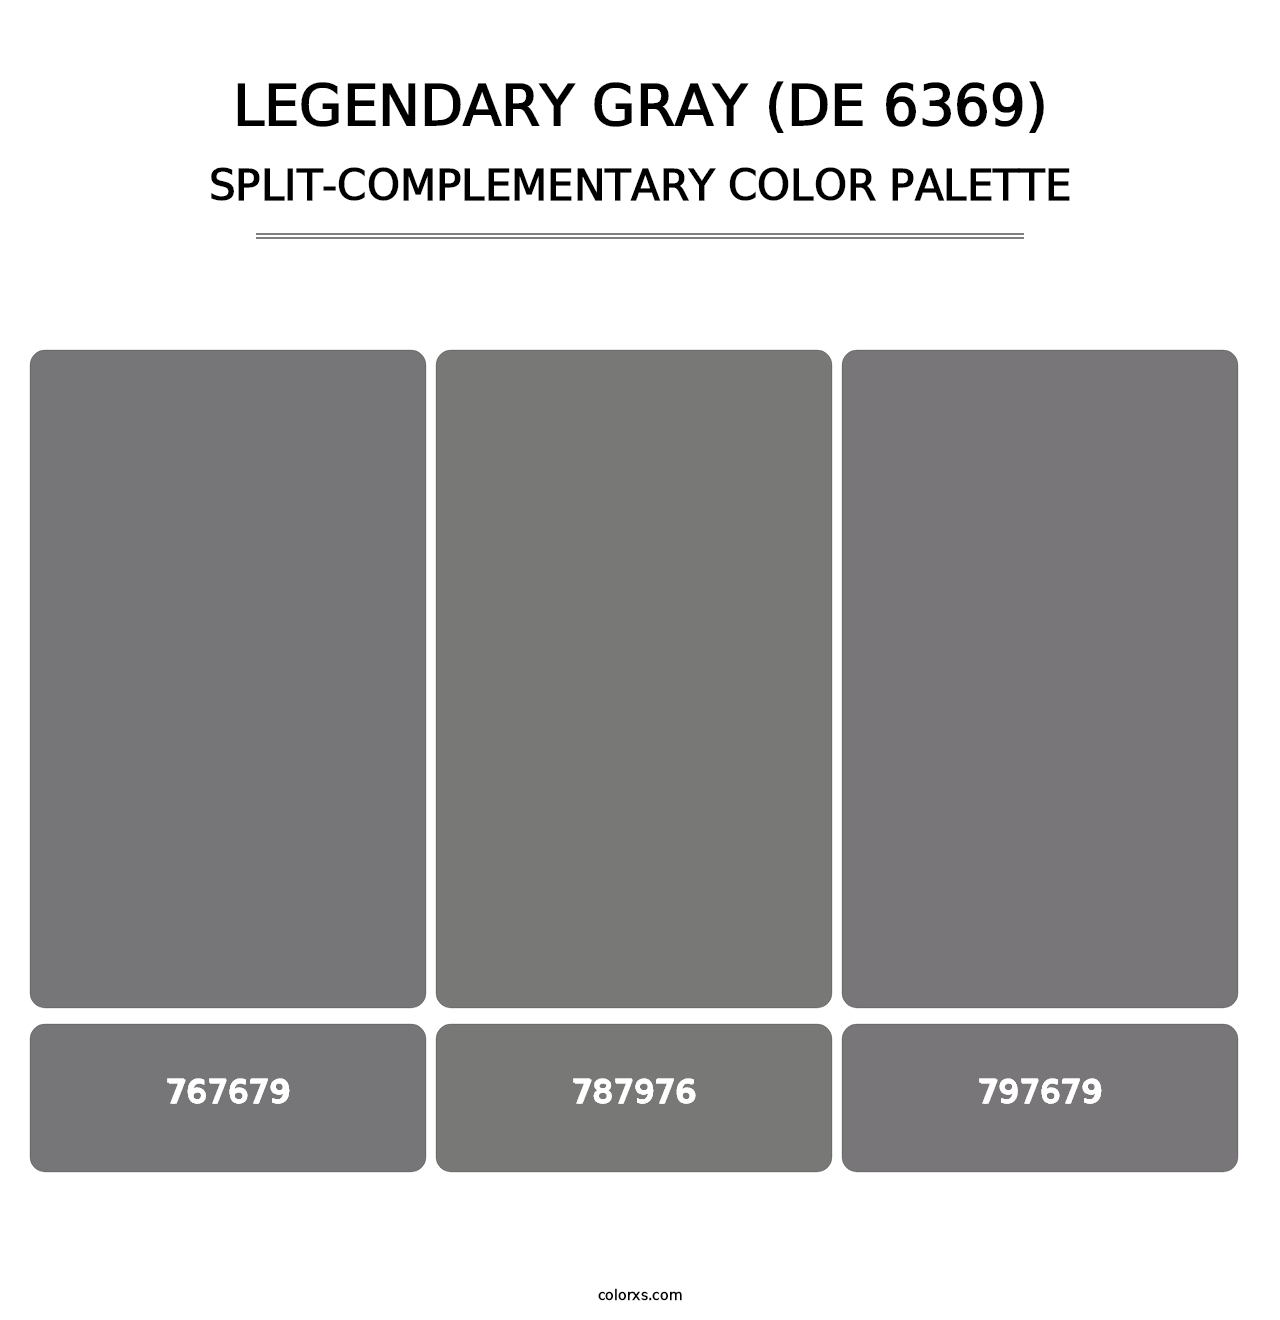 Legendary Gray (DE 6369) - Split-Complementary Color Palette